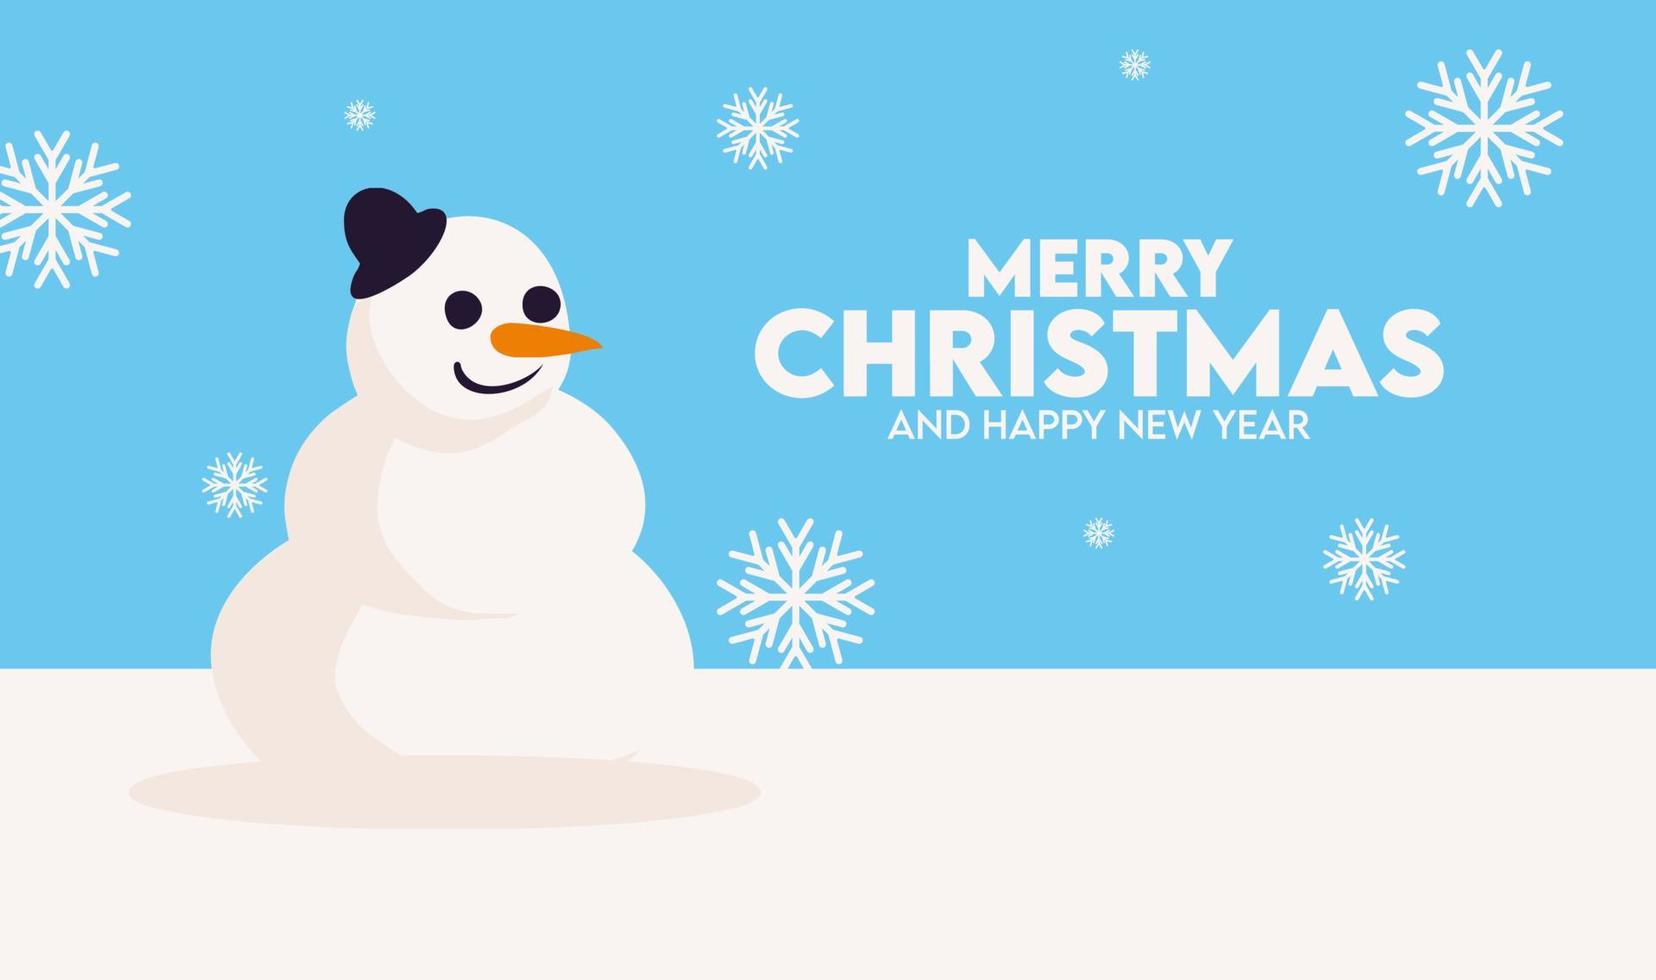 banner de tarjeta de felicitación de feliz navidad en fondo blanco y azul con tema genial vector